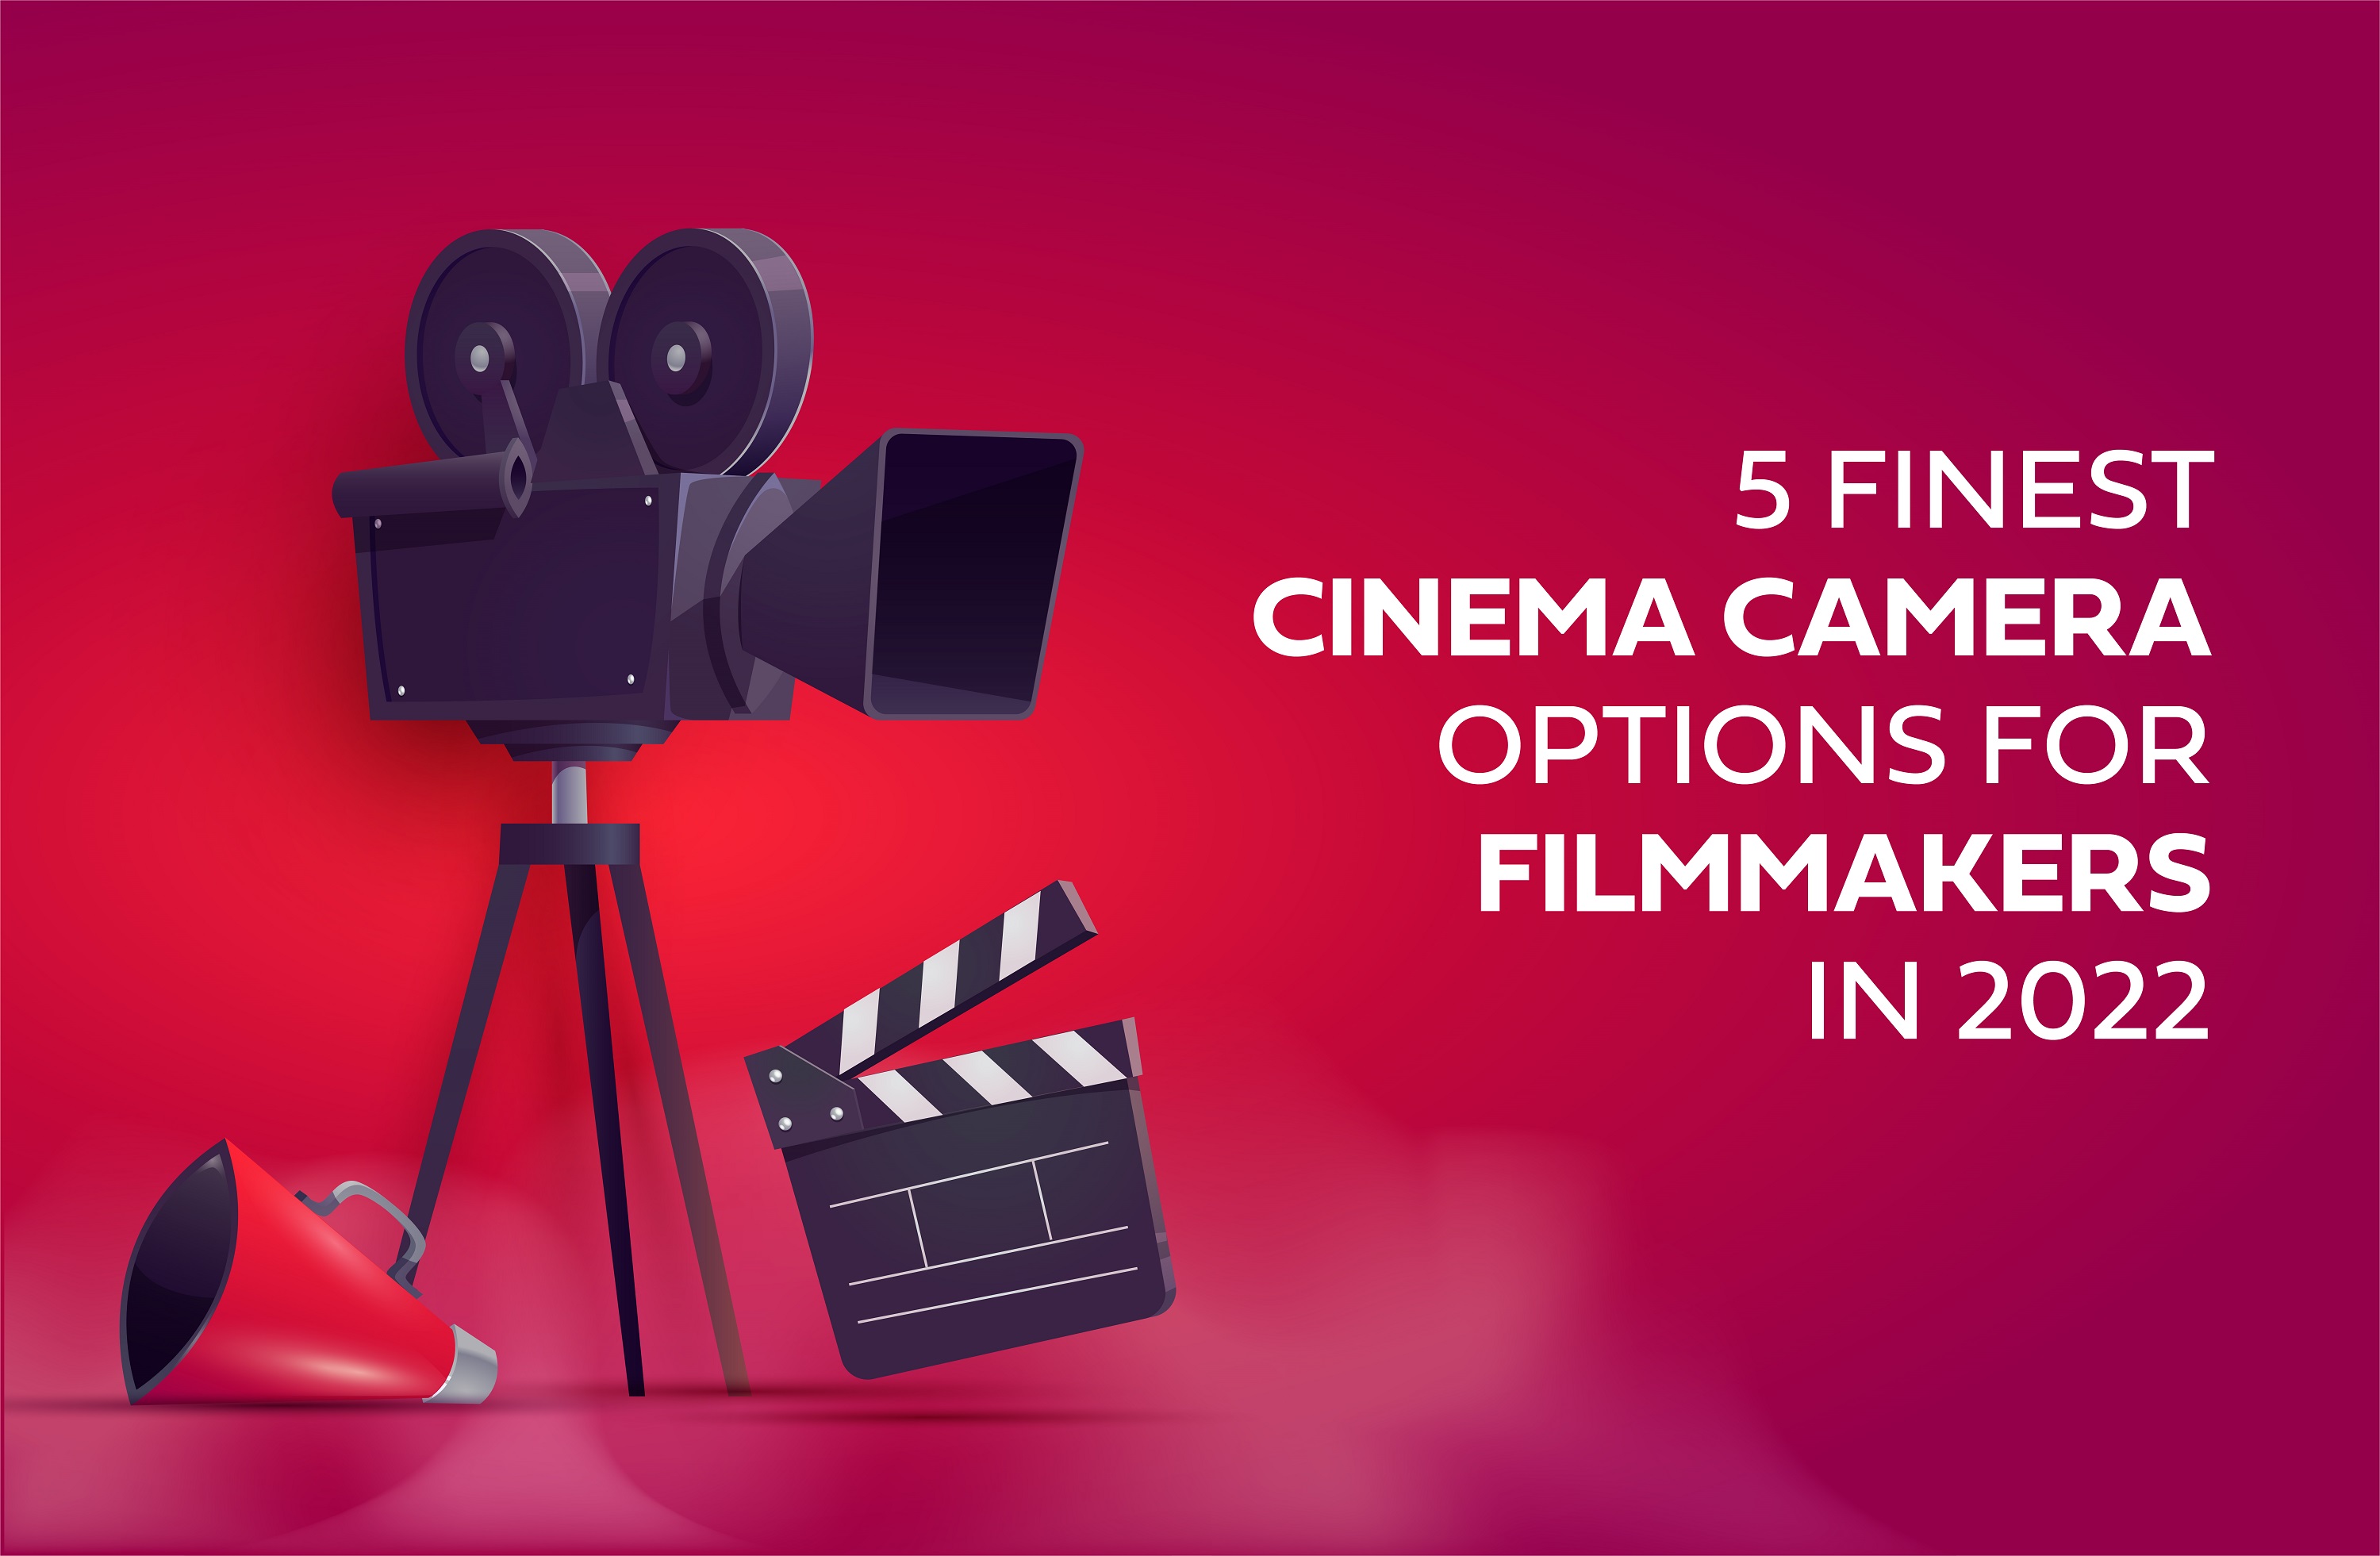 Top 5 Cinema Cameras for Filmmakers in 2022